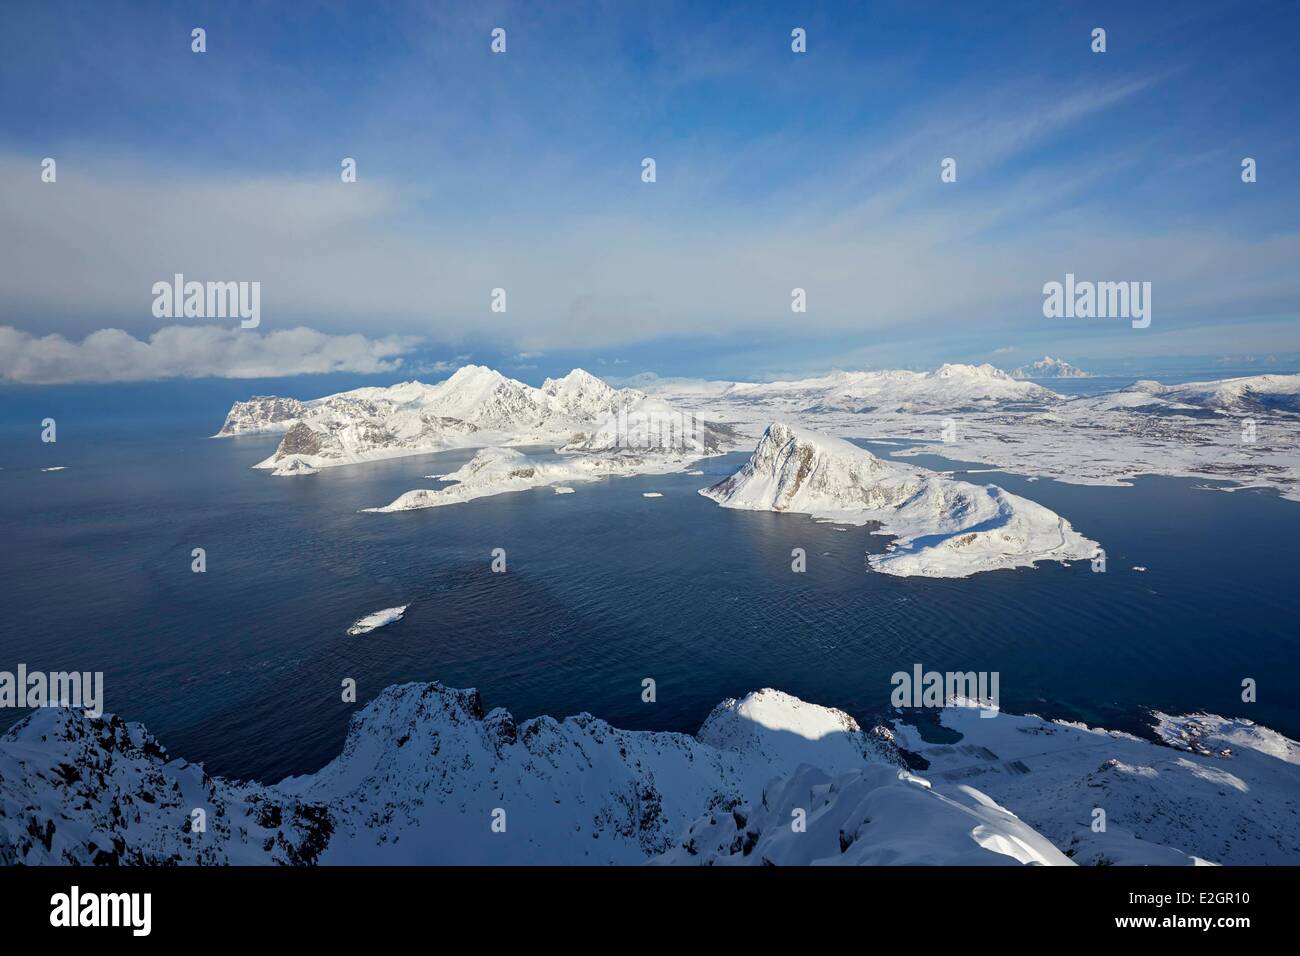 La Norvège Lofoten, Vestvagoya island en hiver Banque D'Images